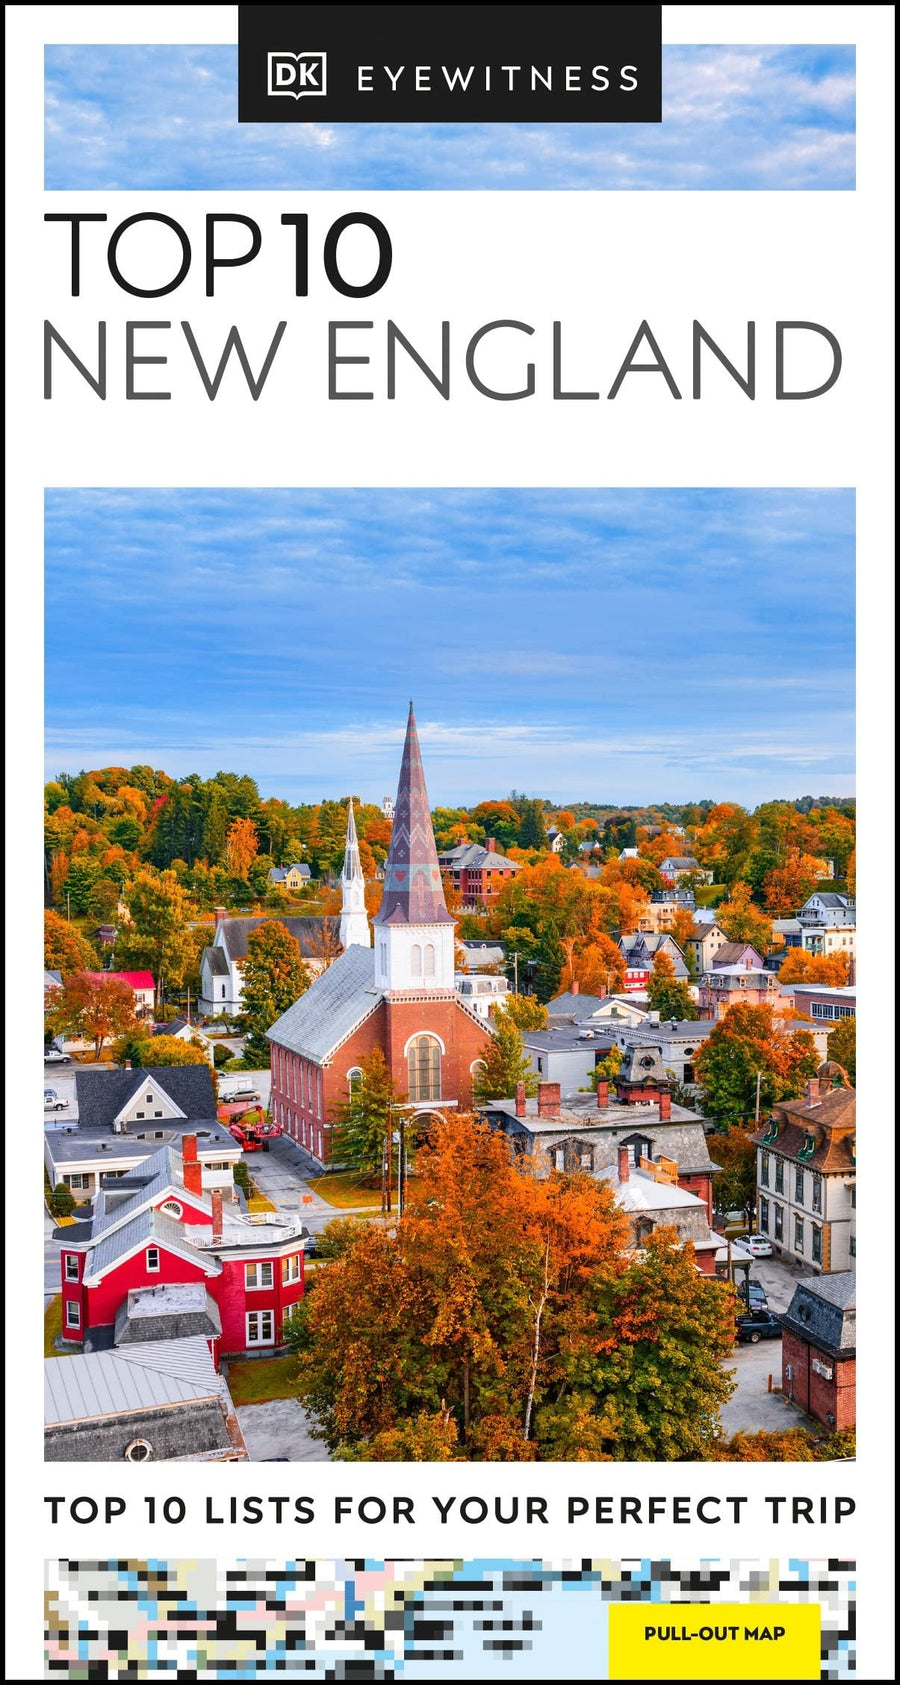 Guide de voyage (en anglais) - New England Top 10 | Eyewitness guide de voyage Eyewitness 